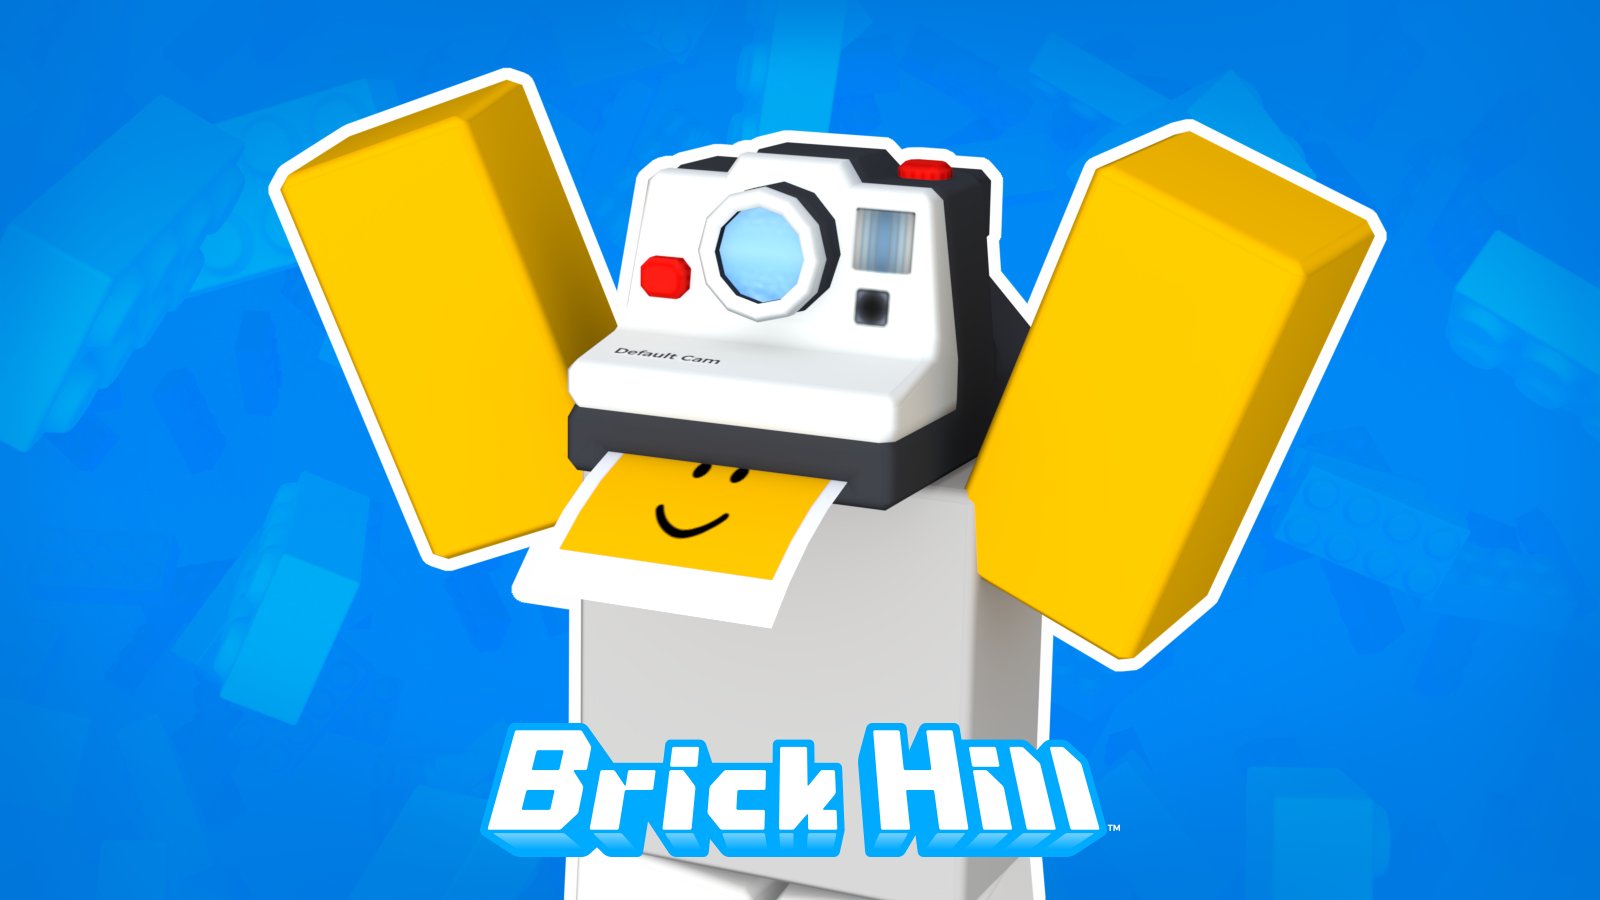 Brick Hill